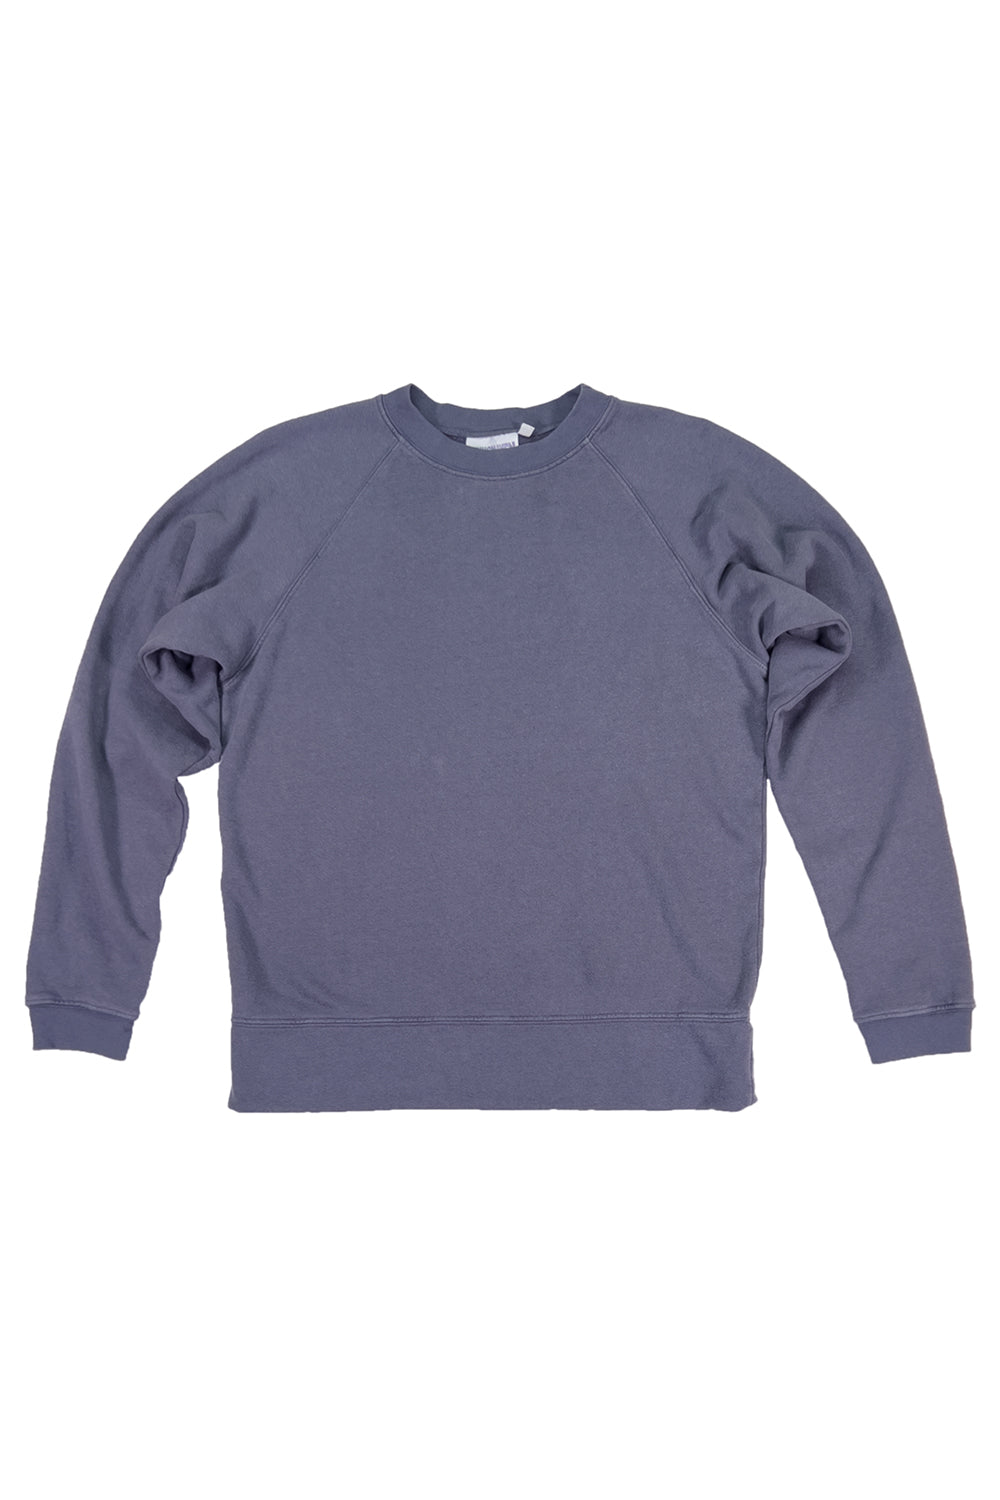 Sierra Raglan Sweatshirt | Jungmaven Hemp Clothing & Accessories / Color: Diesel Gray